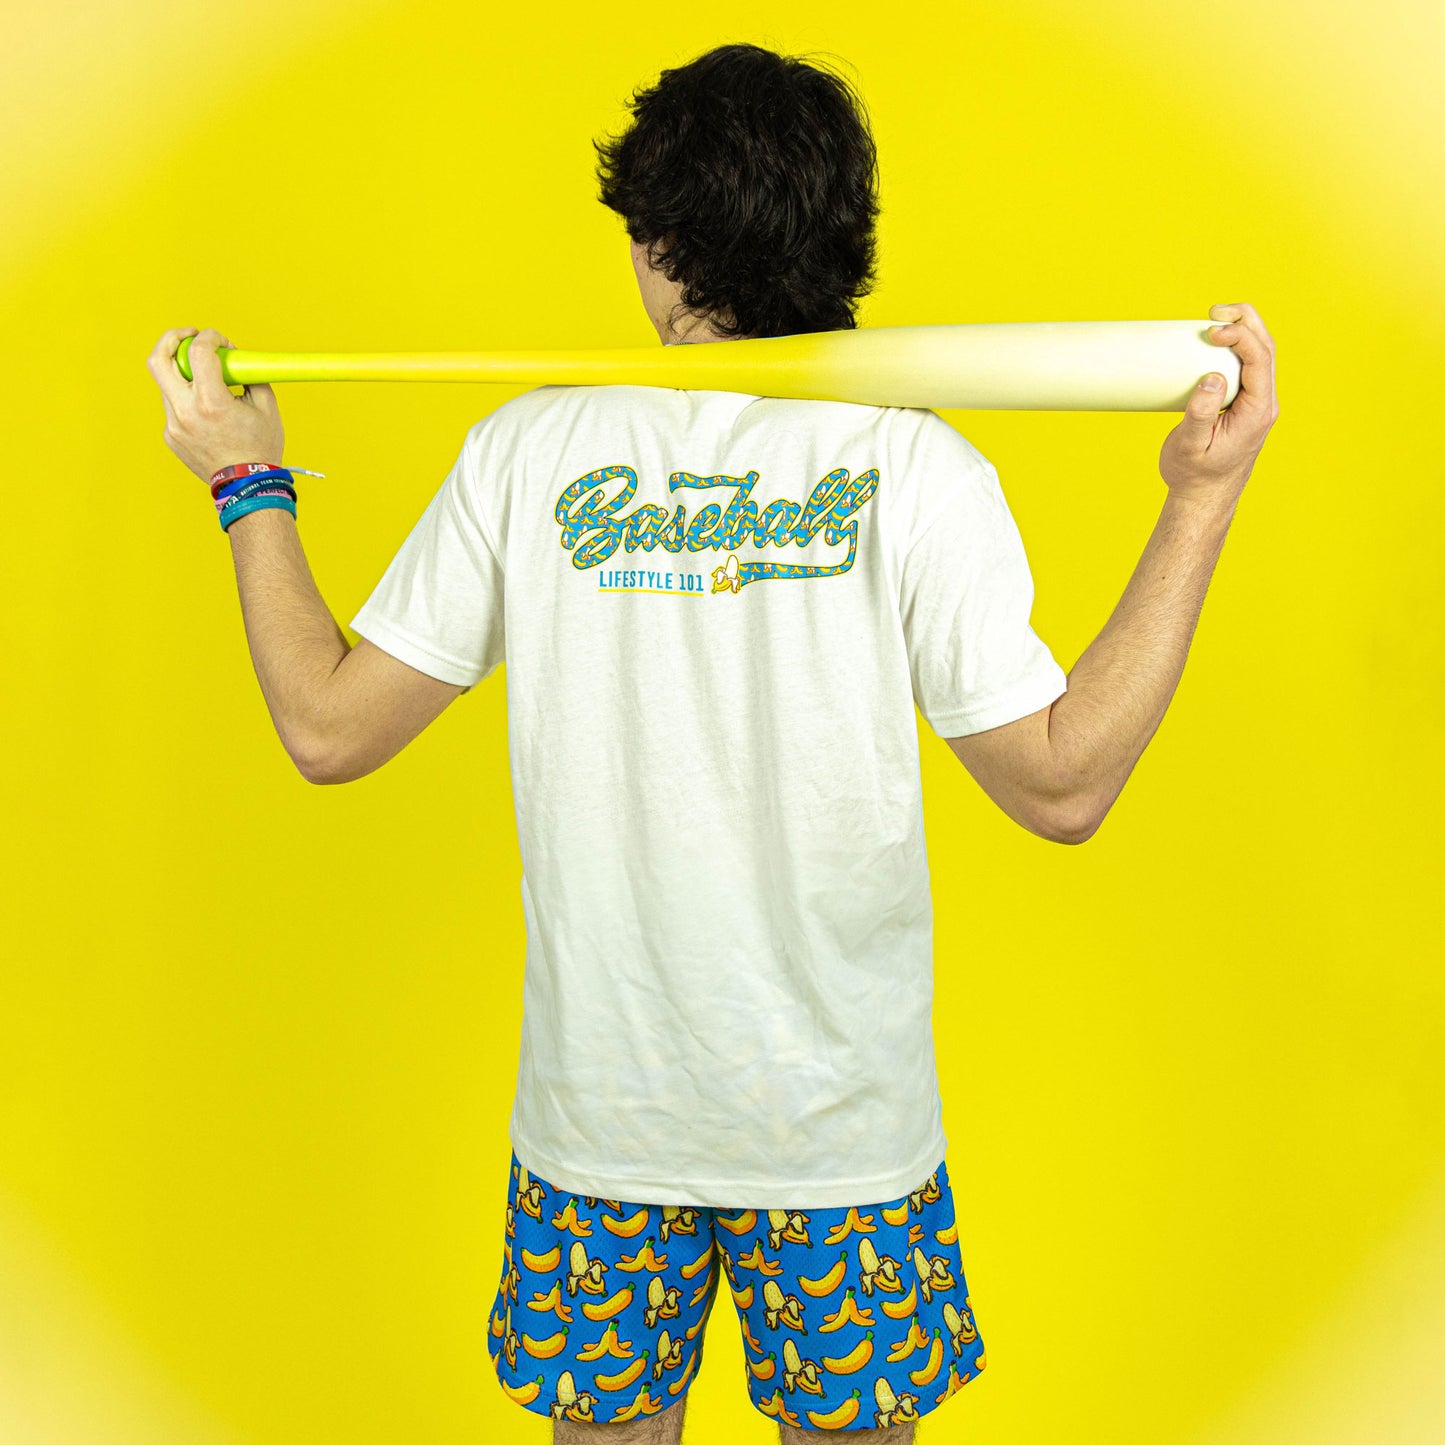 Savannah bananas youth tshirts